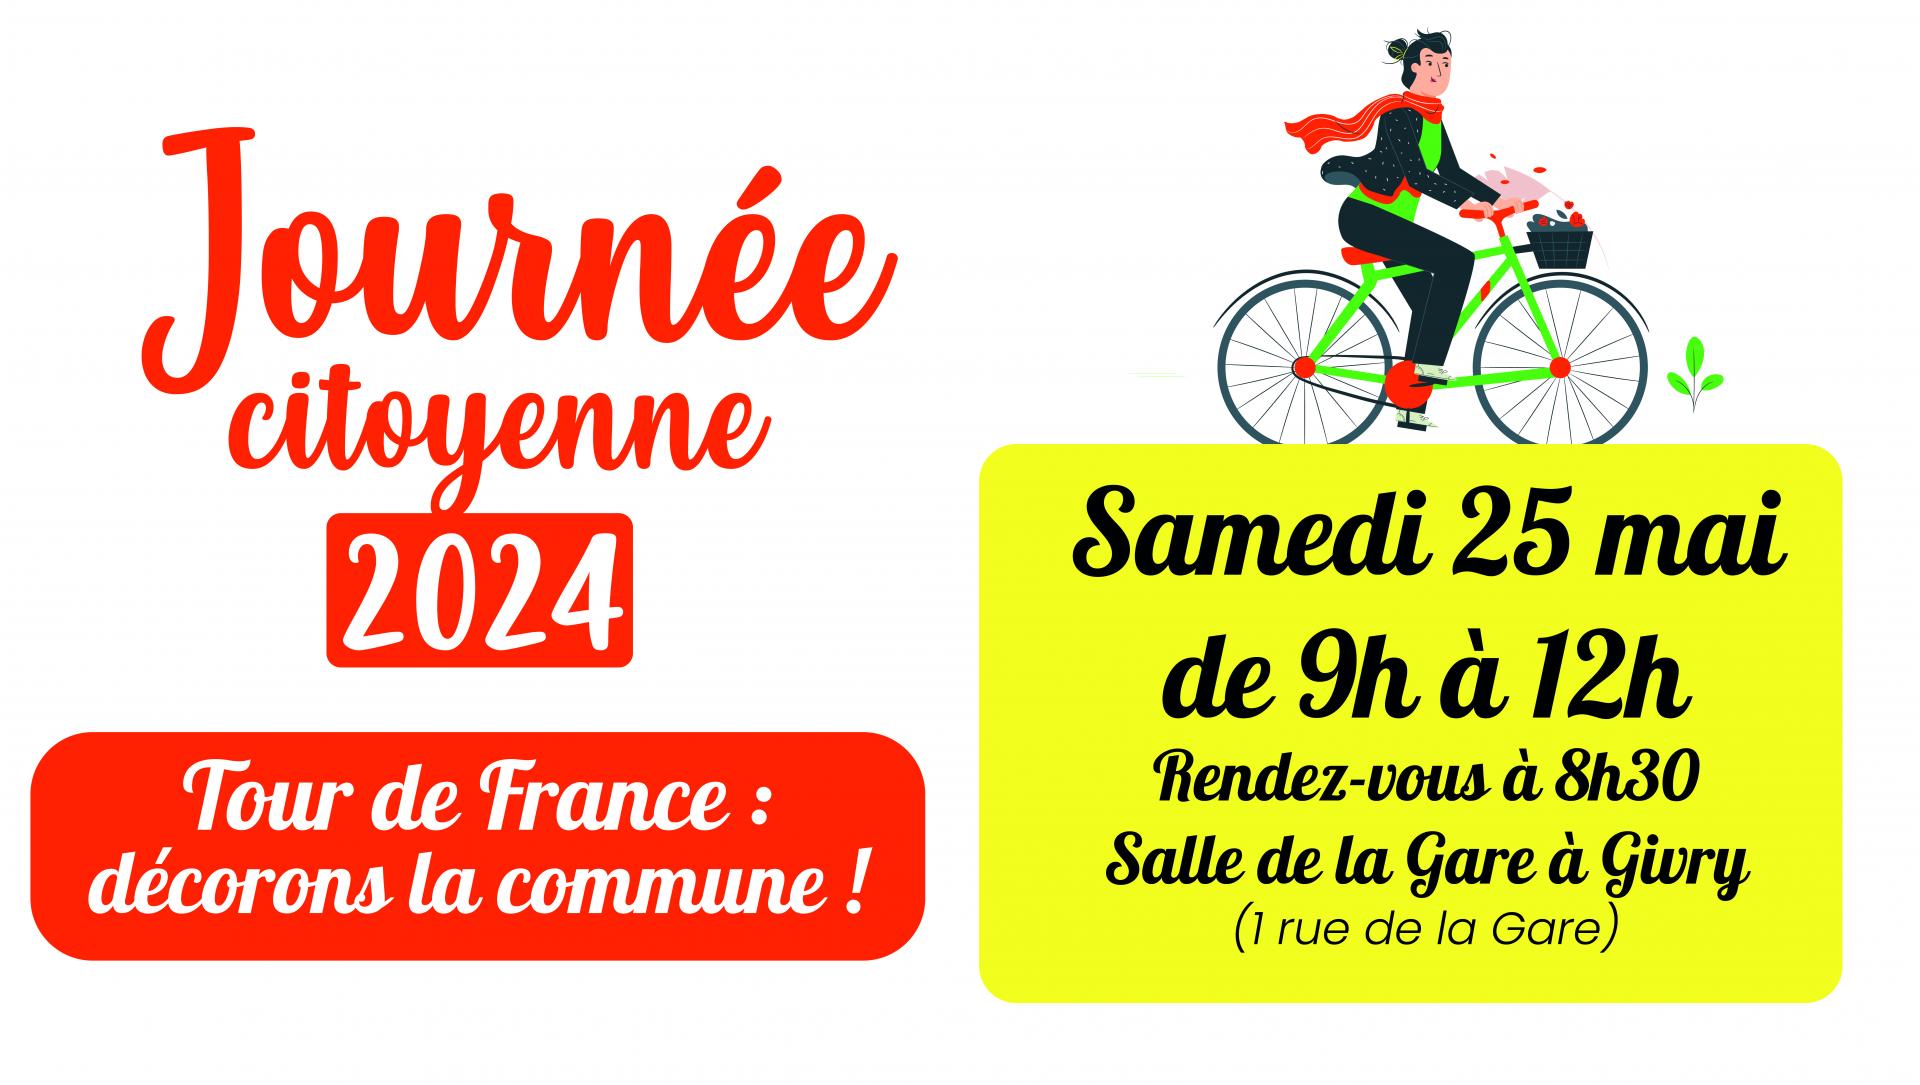 Samedi 25 mai  : Journée citoyenne "Tour de France : décorons la commune !"